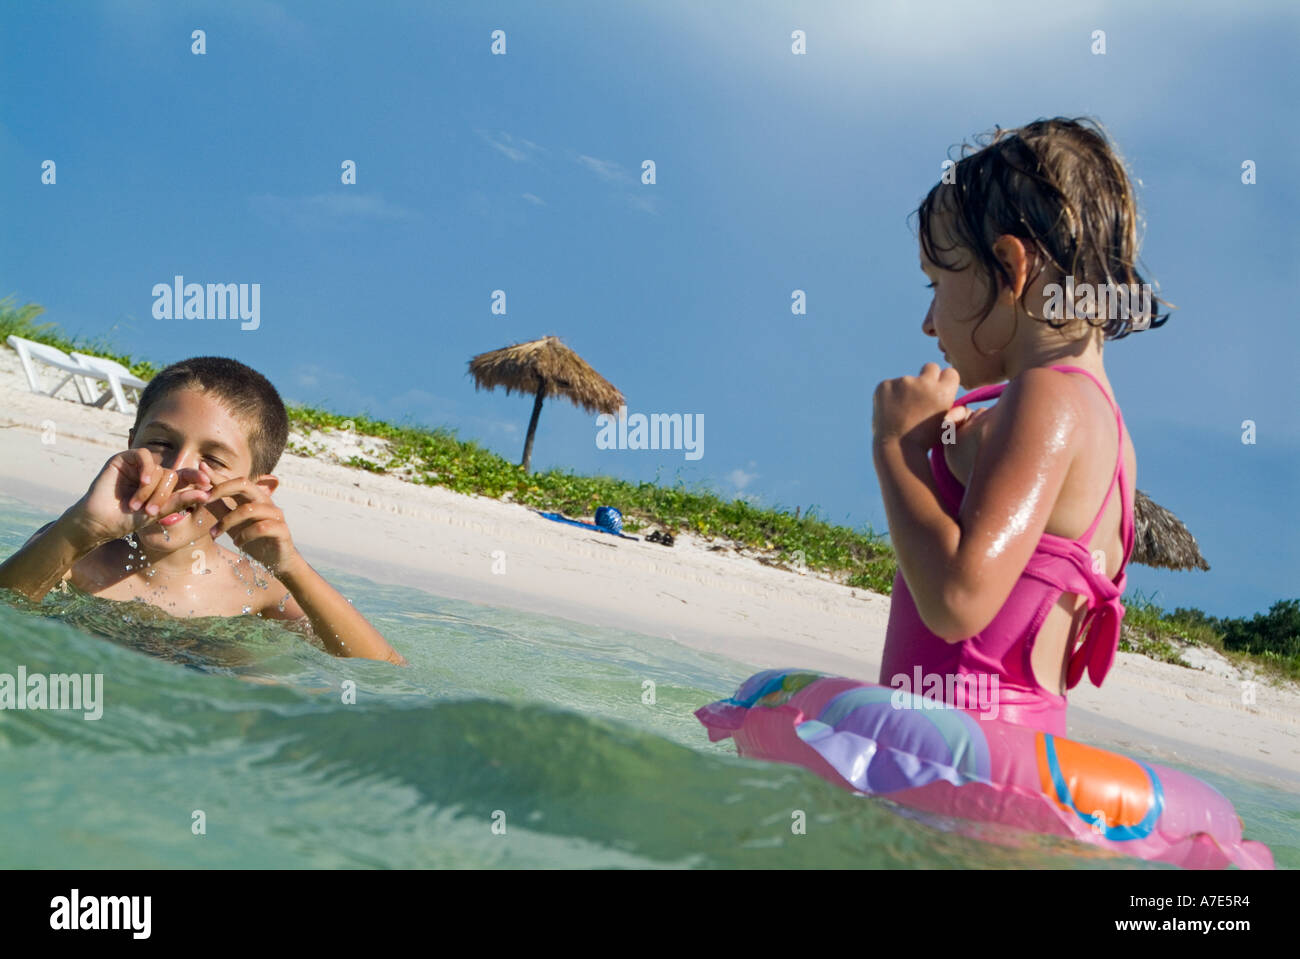 Un ragazzo e una ragazza a nuotare in acque tropicali a Cayo Jutias, Cuba. Foto Stock